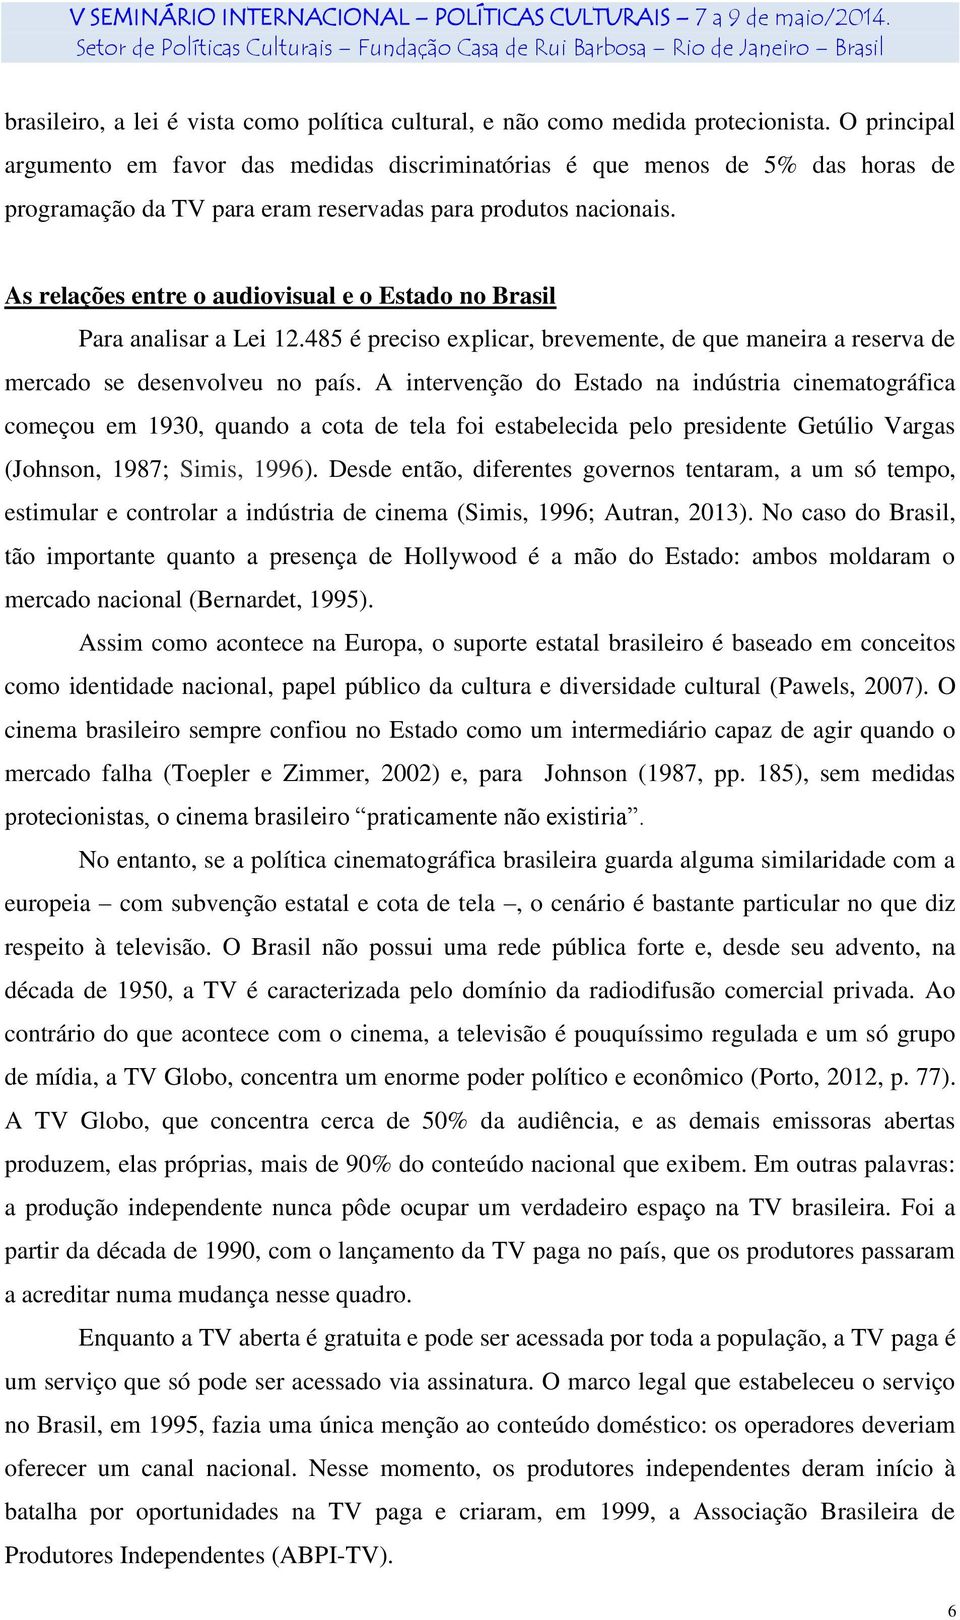 As relações entre o audiovisual e o Estado no Brasil Para analisar a Lei 12.485 é preciso explicar, brevemente, de que maneira a reserva de mercado se desenvolveu no país.